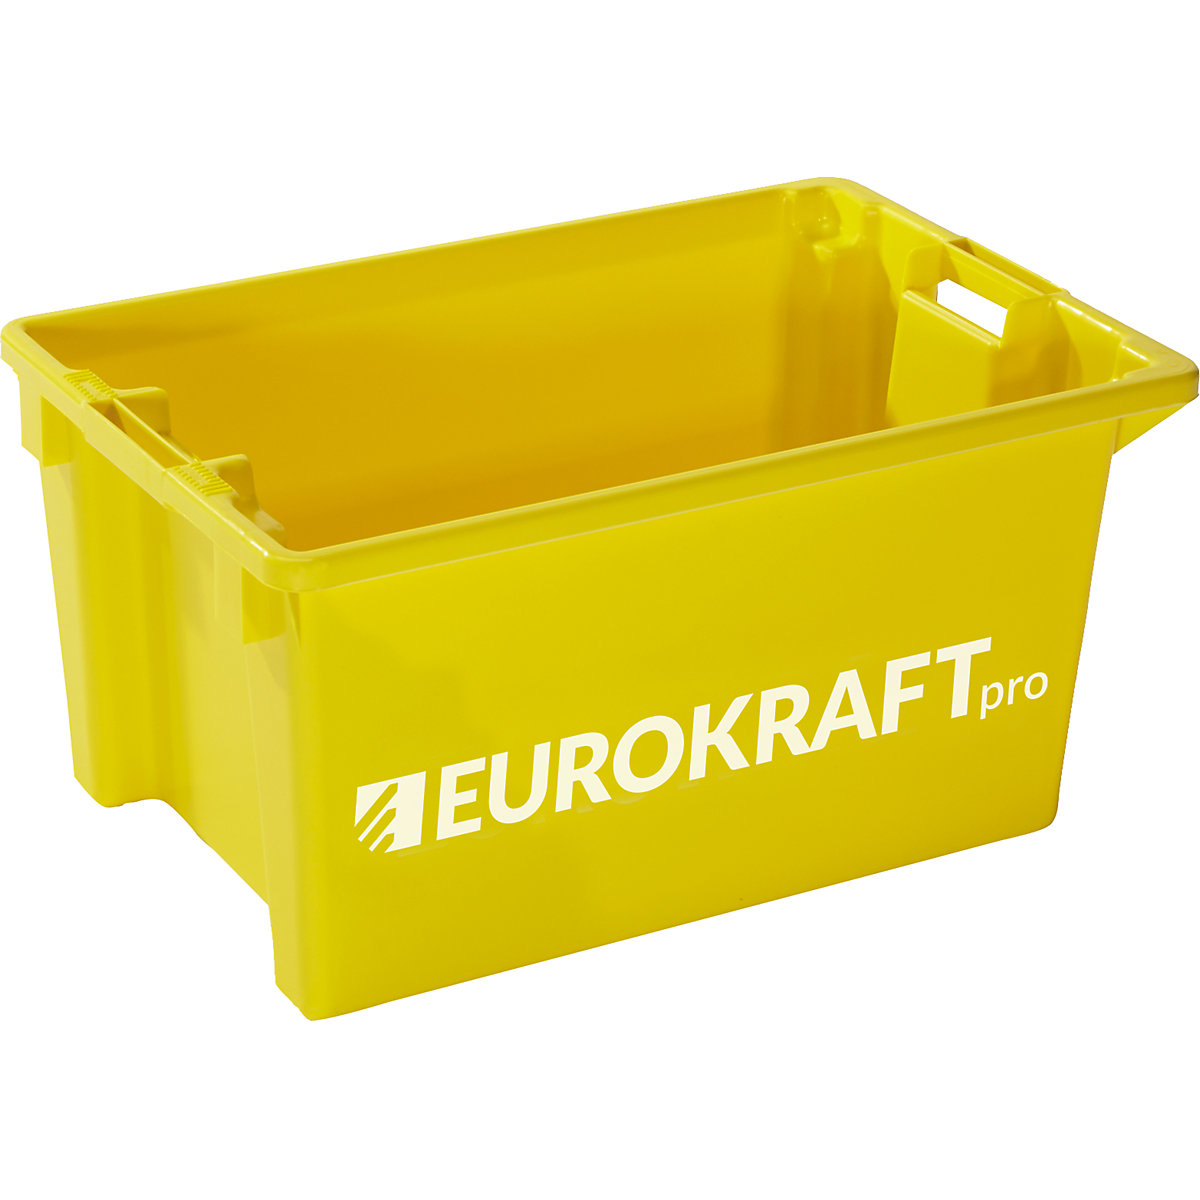 EUROKRAFTpro – Zasučni zaboj za zlaganje, prostornina 50 l, DE 3 kosi, rumena